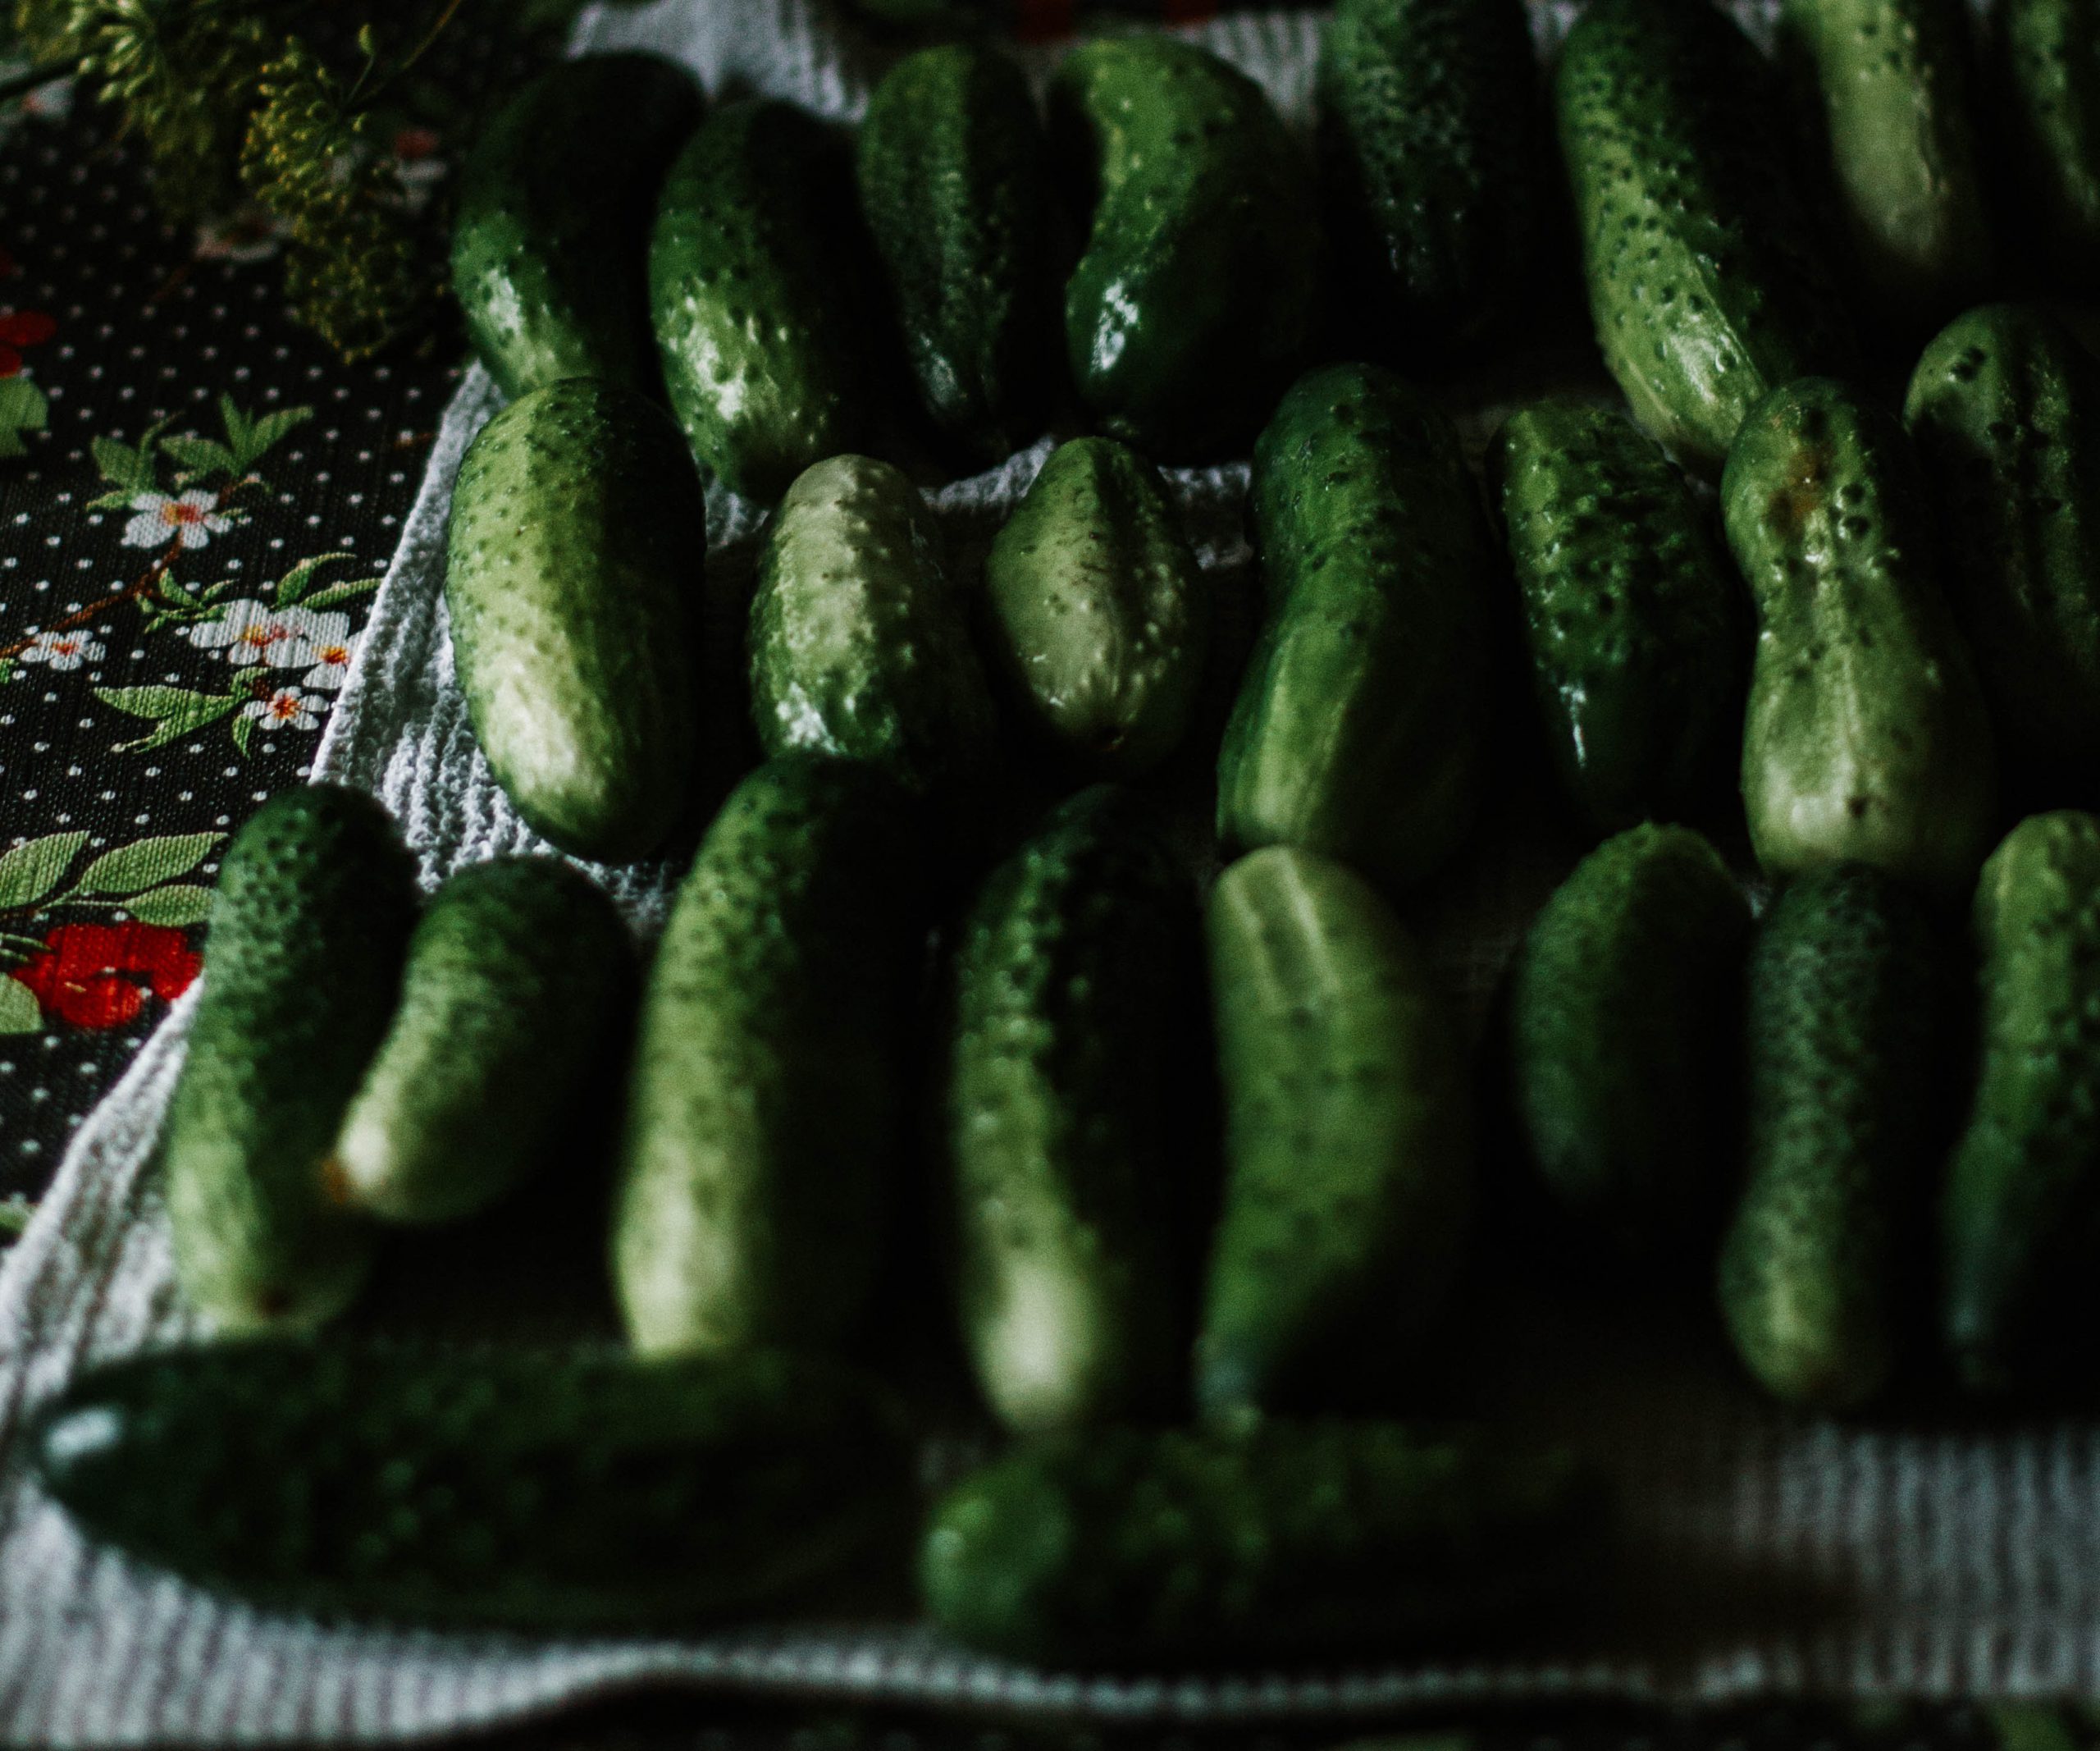 Le concombre - Quels sont ses bienfaits et comment le préparer ?